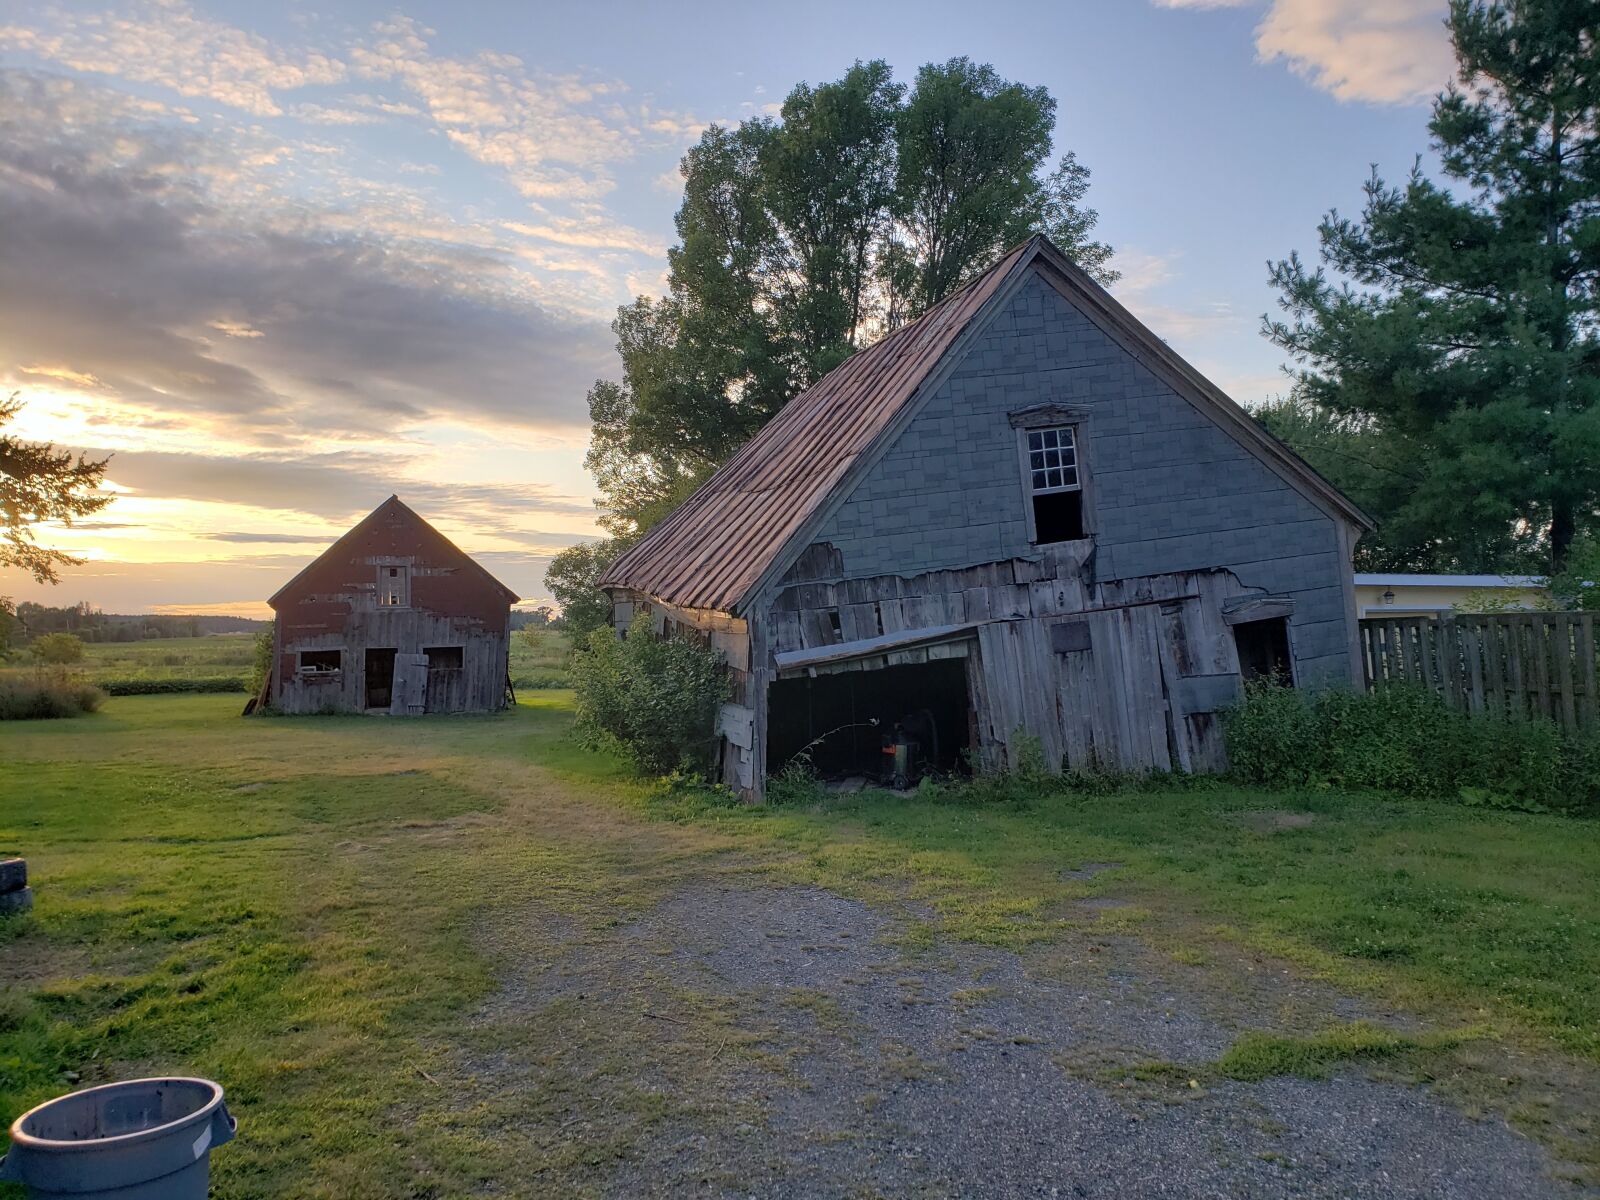 Samsung Galaxy S9 sample photo. Falling barn, sunset, farm photography